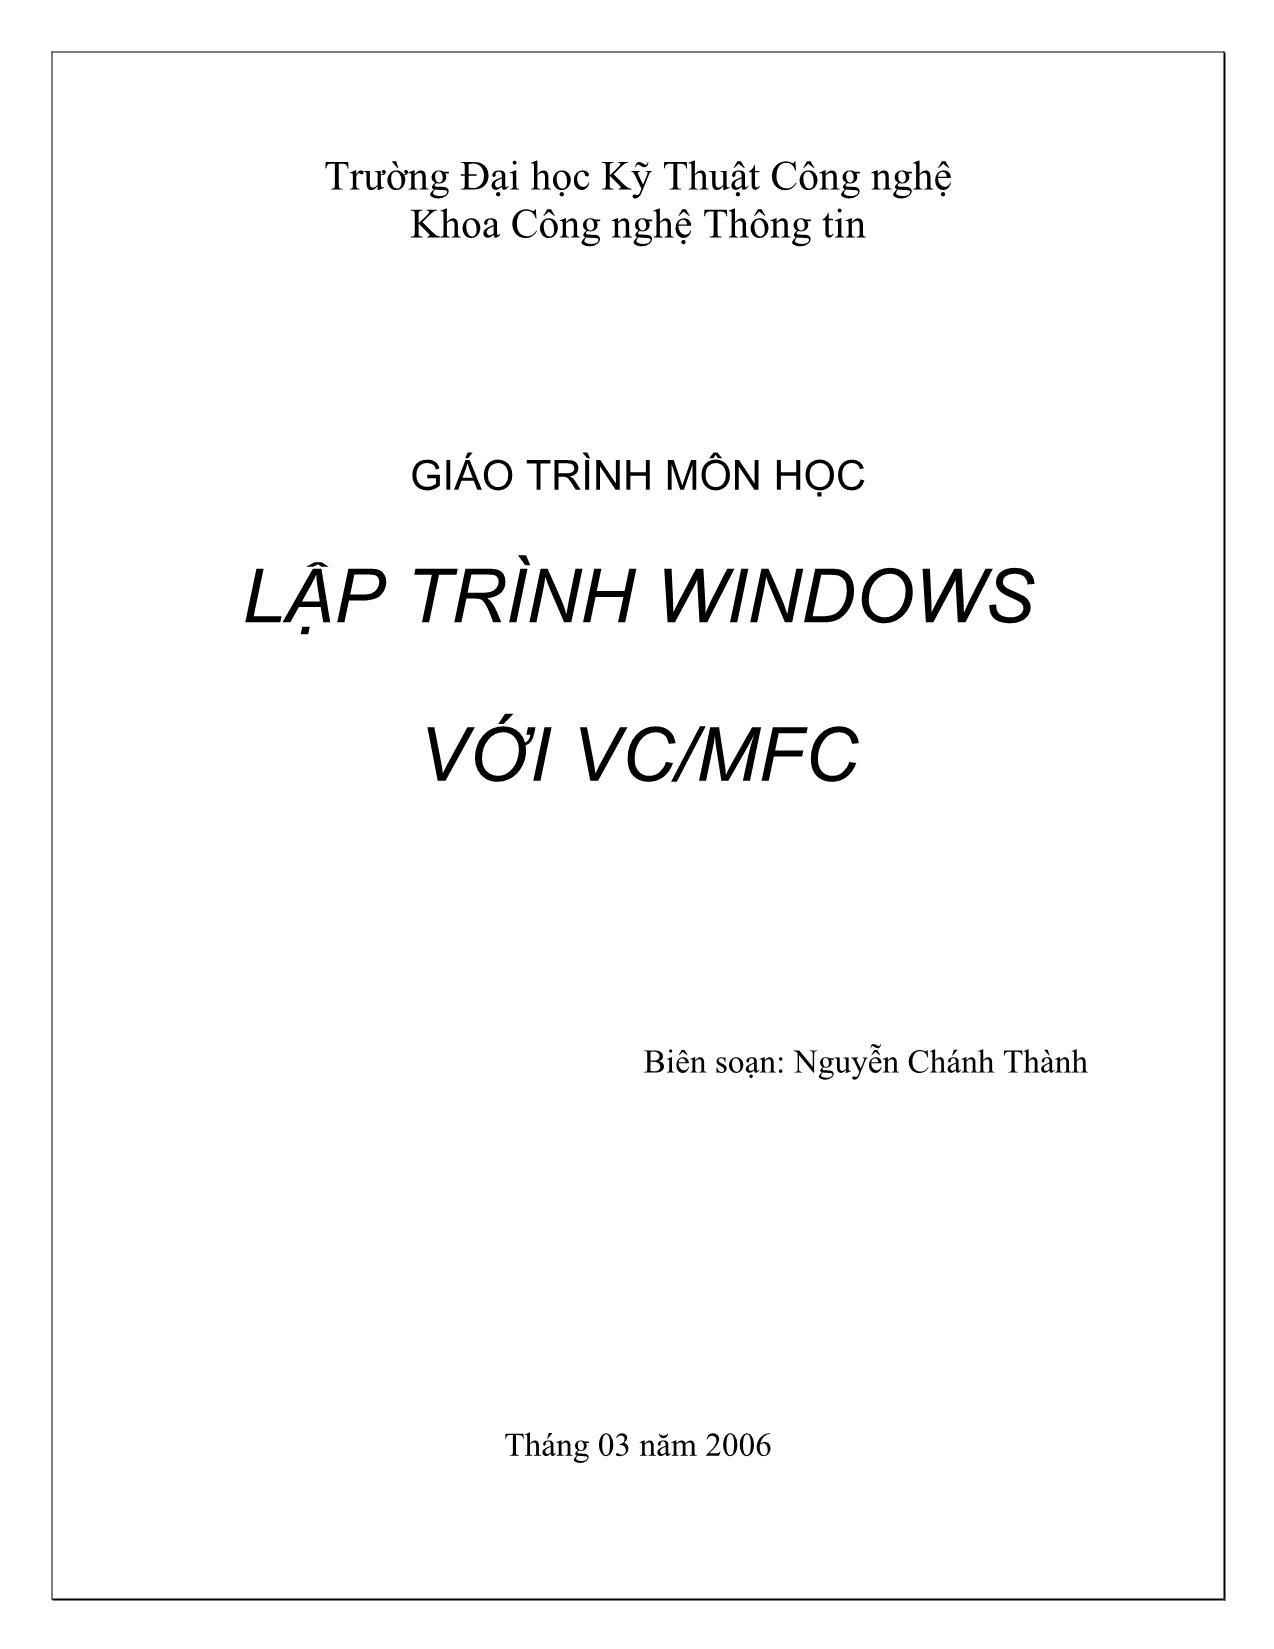 Giáo trình Lập trình Windows với VC/MFC trang 1